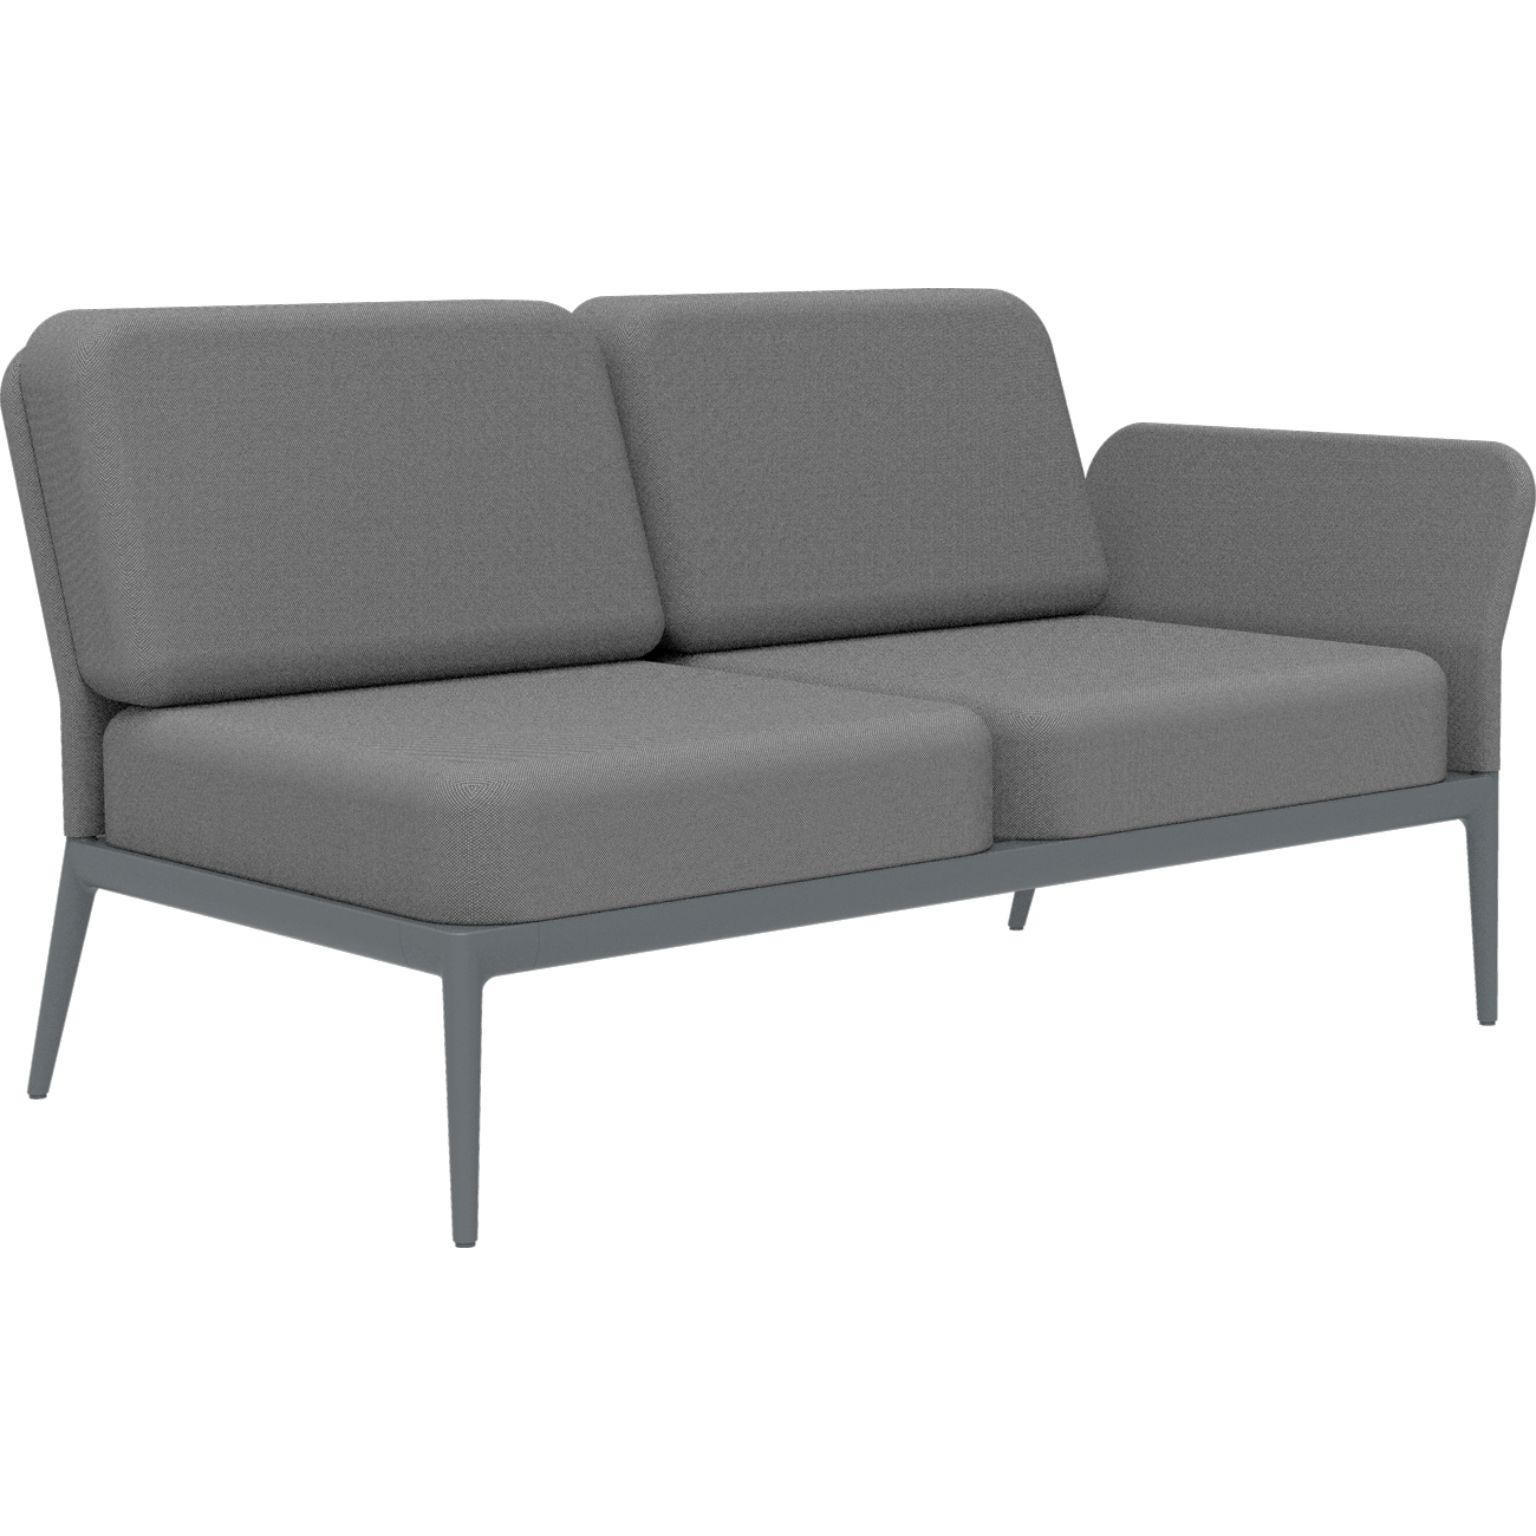 Cover Grau Doppeltes linkes modulares Sofa von MOWEE
Abmessungen: T83 x B148 x H81 cm (Sitzhöhe 42 cm)
MATERIAL: Aluminium und Polstermaterial.
Gewicht: 29 kg.
Auch in verschiedenen Farben und Ausführungen erhältlich. Bitte kontaktieren Sie